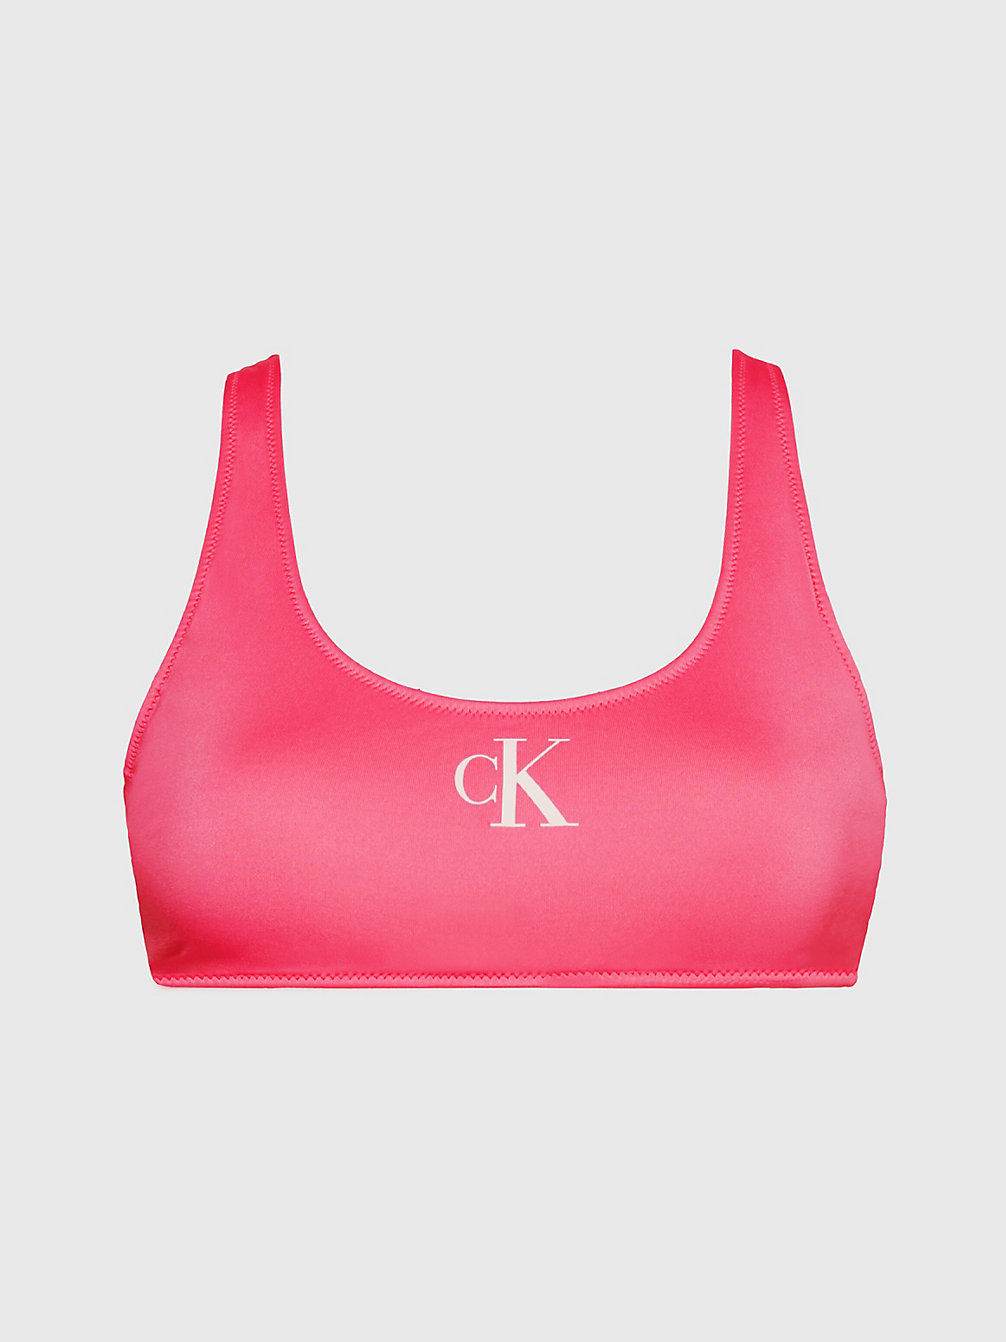 PINK FLASH > Góra Od Bikini Typu Bralette - CK Monogram > undefined Kobiety - Calvin Klein